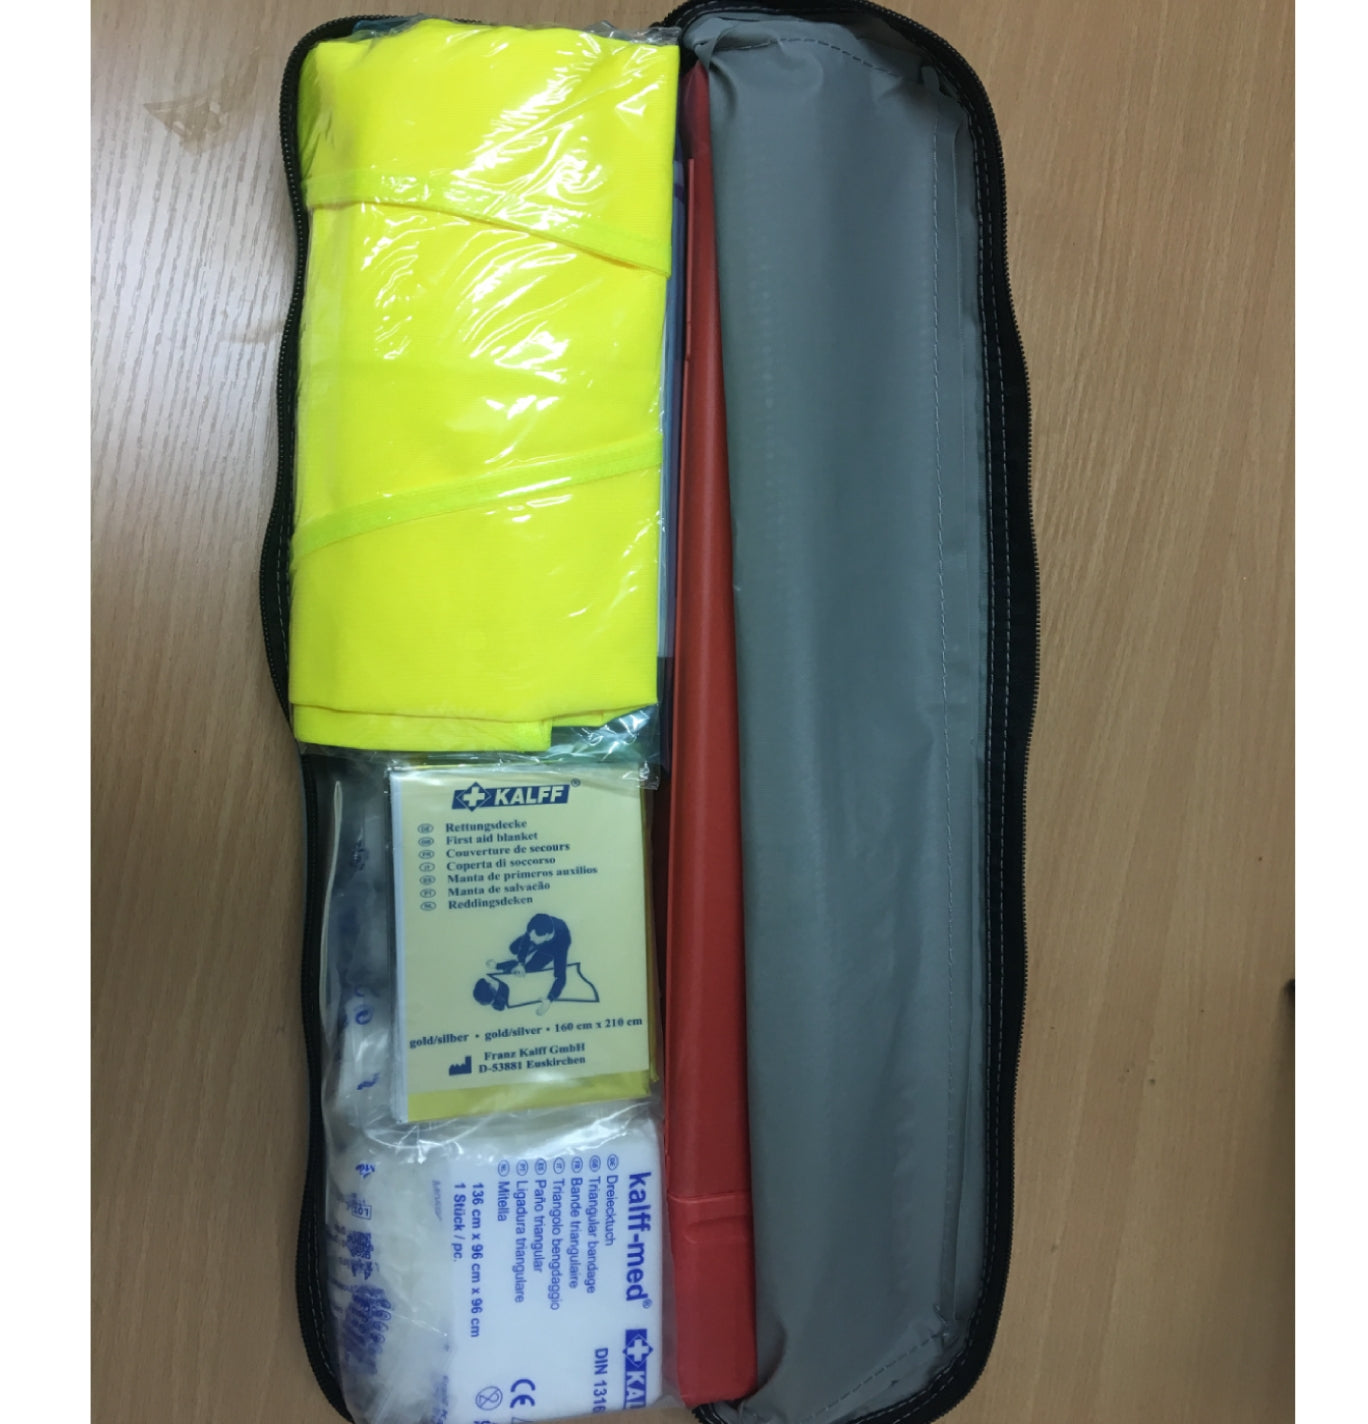 Motorhome Emergency Safety Kit Image